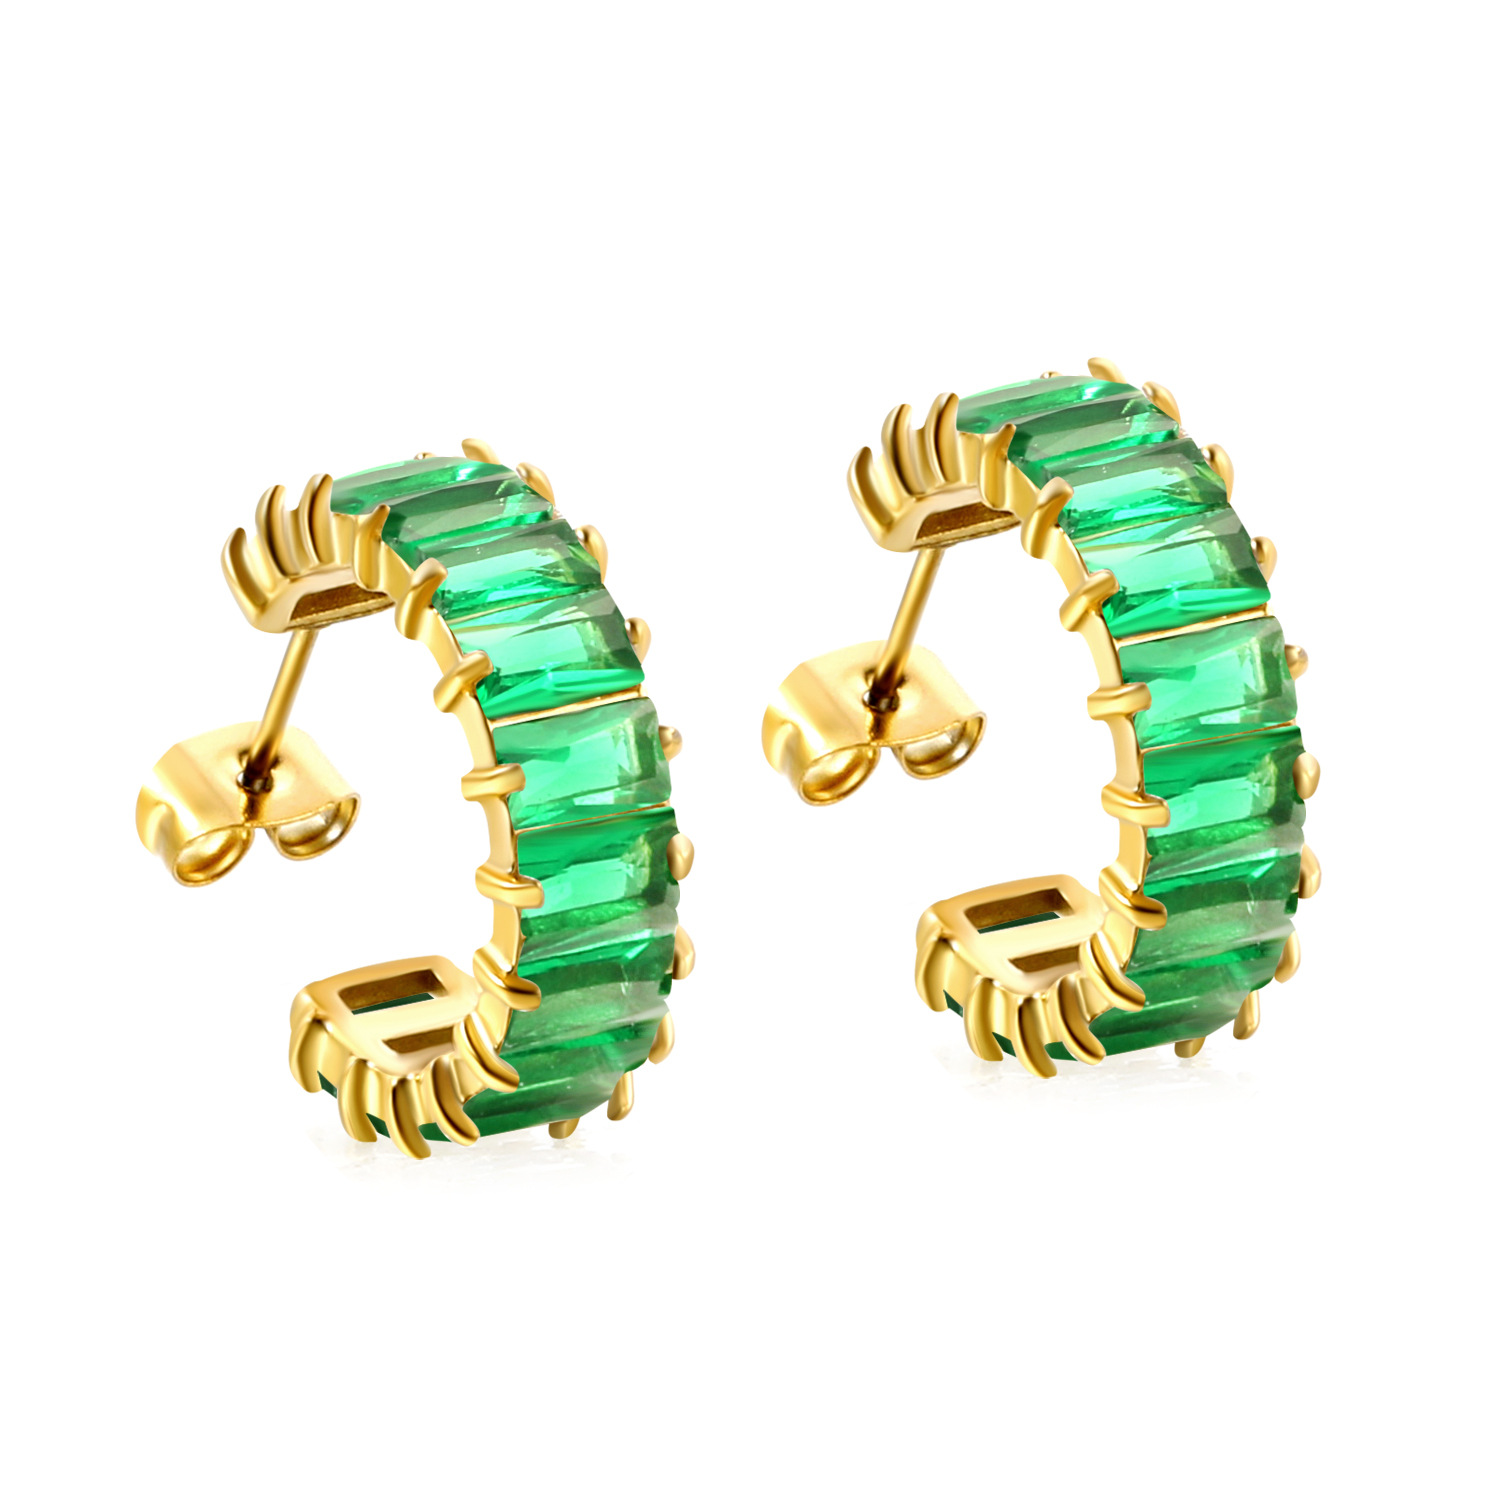 6:Green diamond earrings, gold